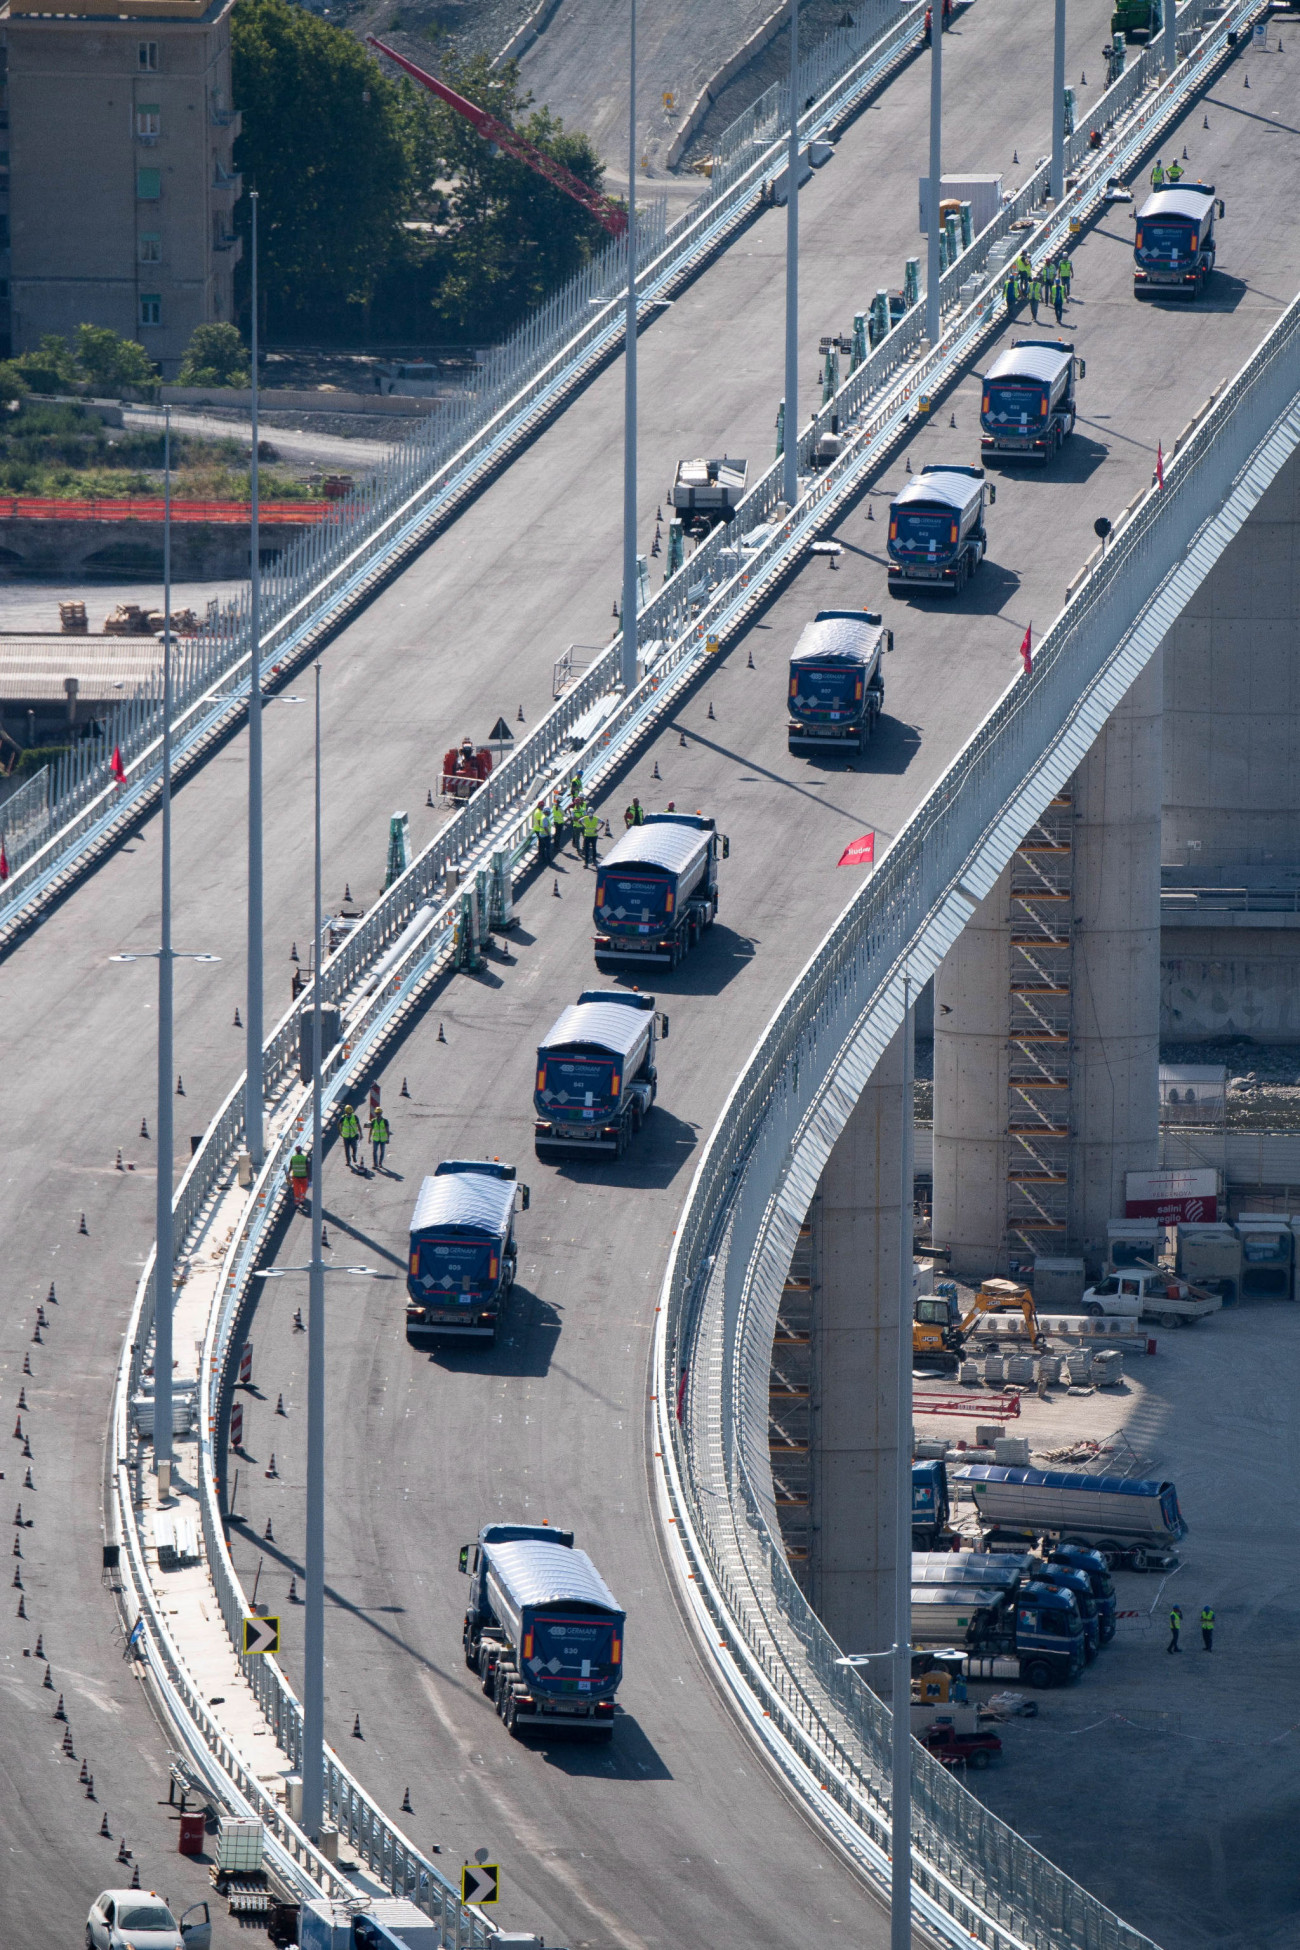 Genova, 2020. július 19.
Nyergesvontató kamionok haladnak át az új genovai autópályahídon 2020. július 19-én. Ötvennégy ilyen teherautó teszi próbára egy héten át az új genovai hidat. 2018. augusztus 14-én ismeretlen okból leszakadt a Morandi-hídból egy 210 méteres szakasz, autók zuhantak a mélybe, 43 ember életét vesztette. Az új, tartókábel nélküli acélhíd Renzo Piano olasz építész tervei alapján készül.
MTI/EPA/ANSA/Luca Zennaro